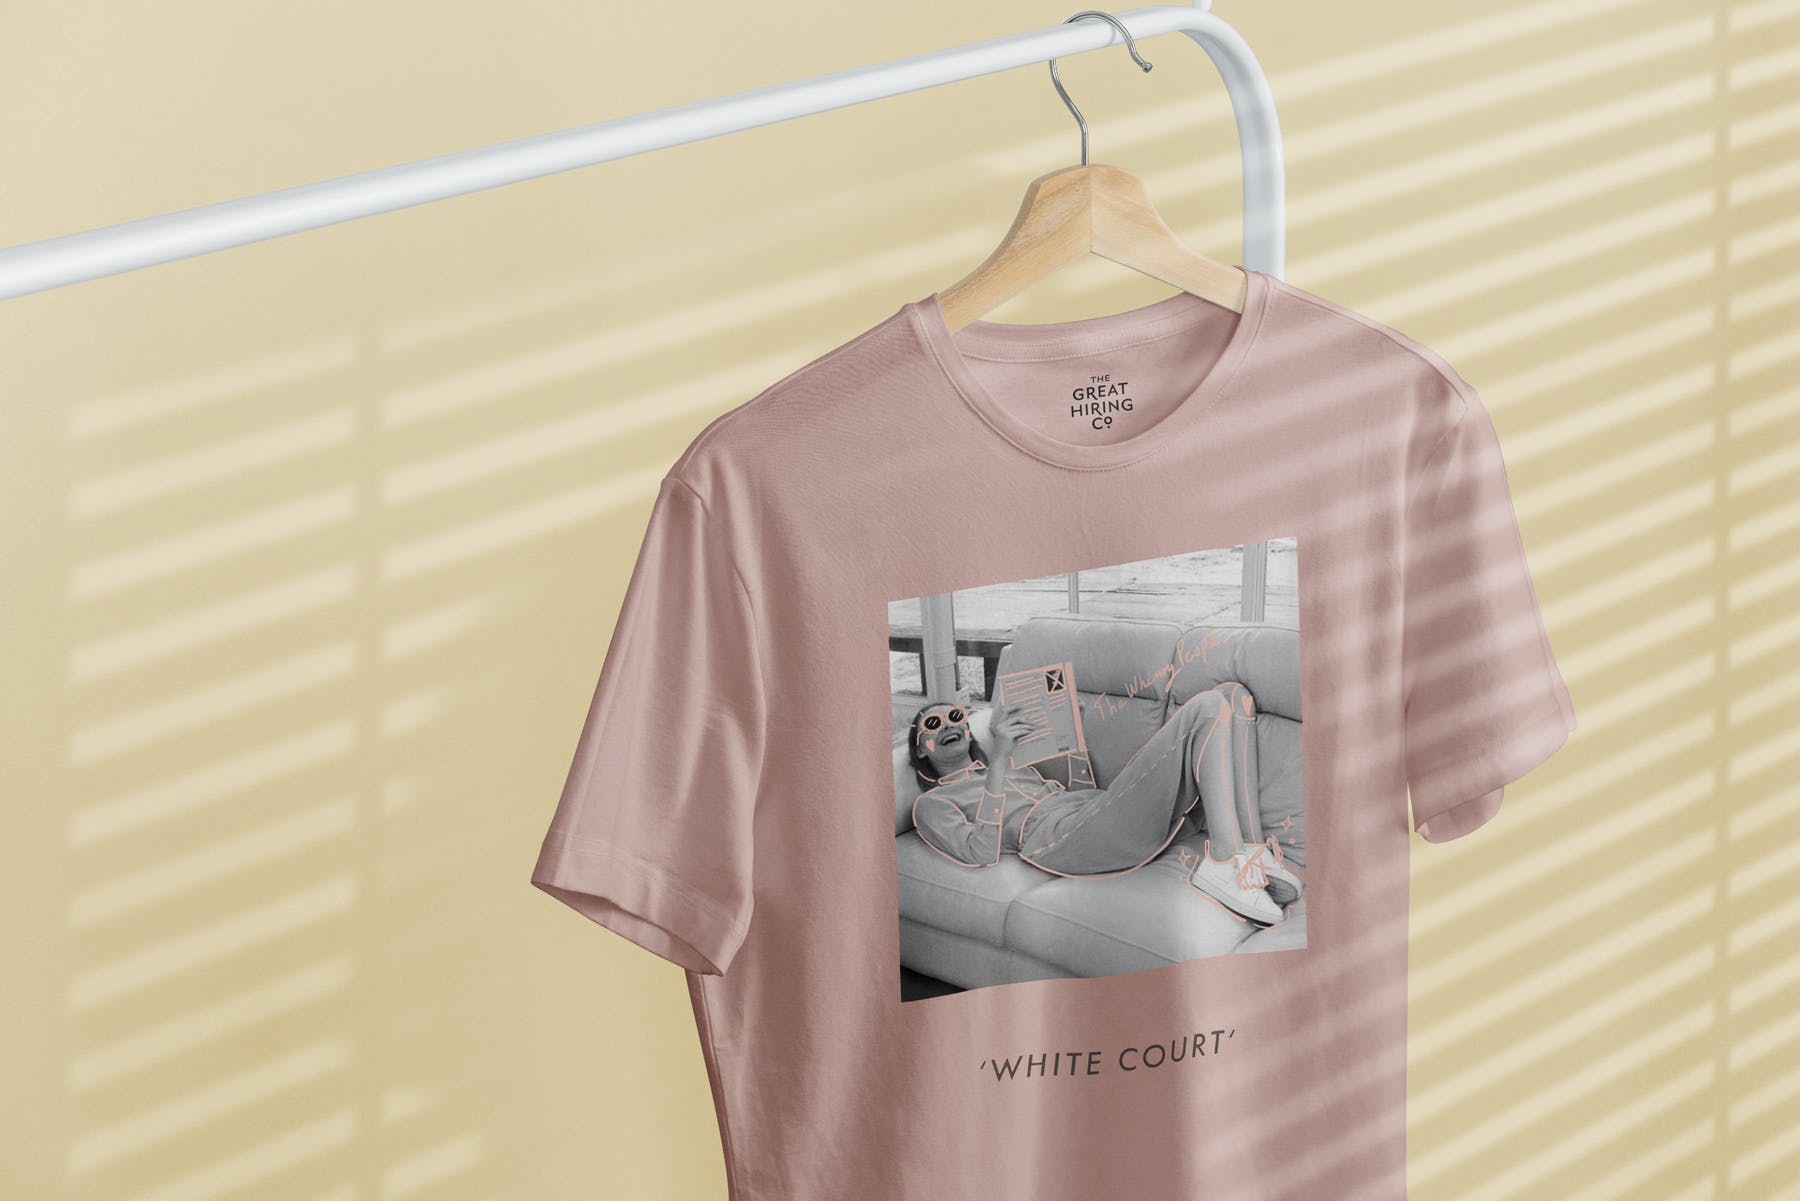 简易晾衣架T恤设计效果图样机蚂蚁素材精选 T-Shirt Mock-Up on Hanger插图(7)